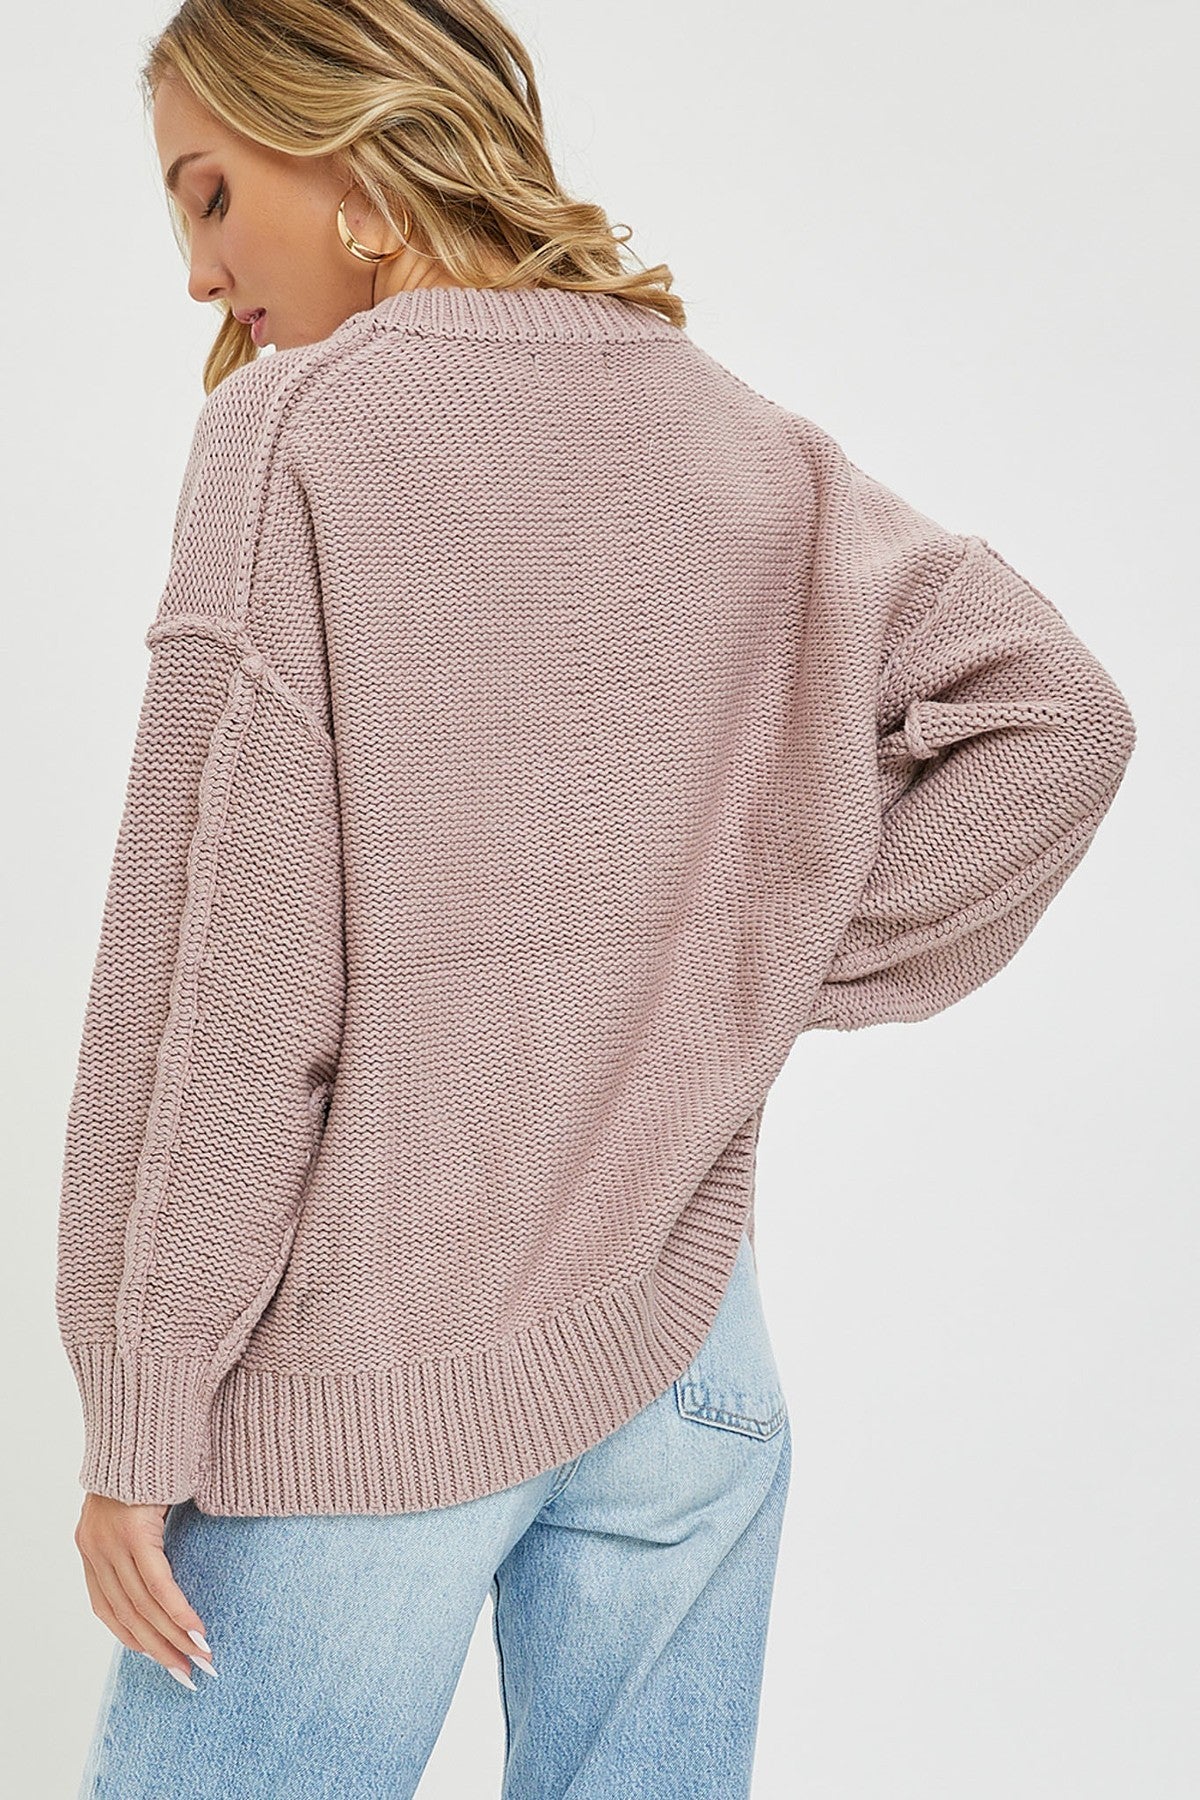 Women's V Neck Oversized Sweater